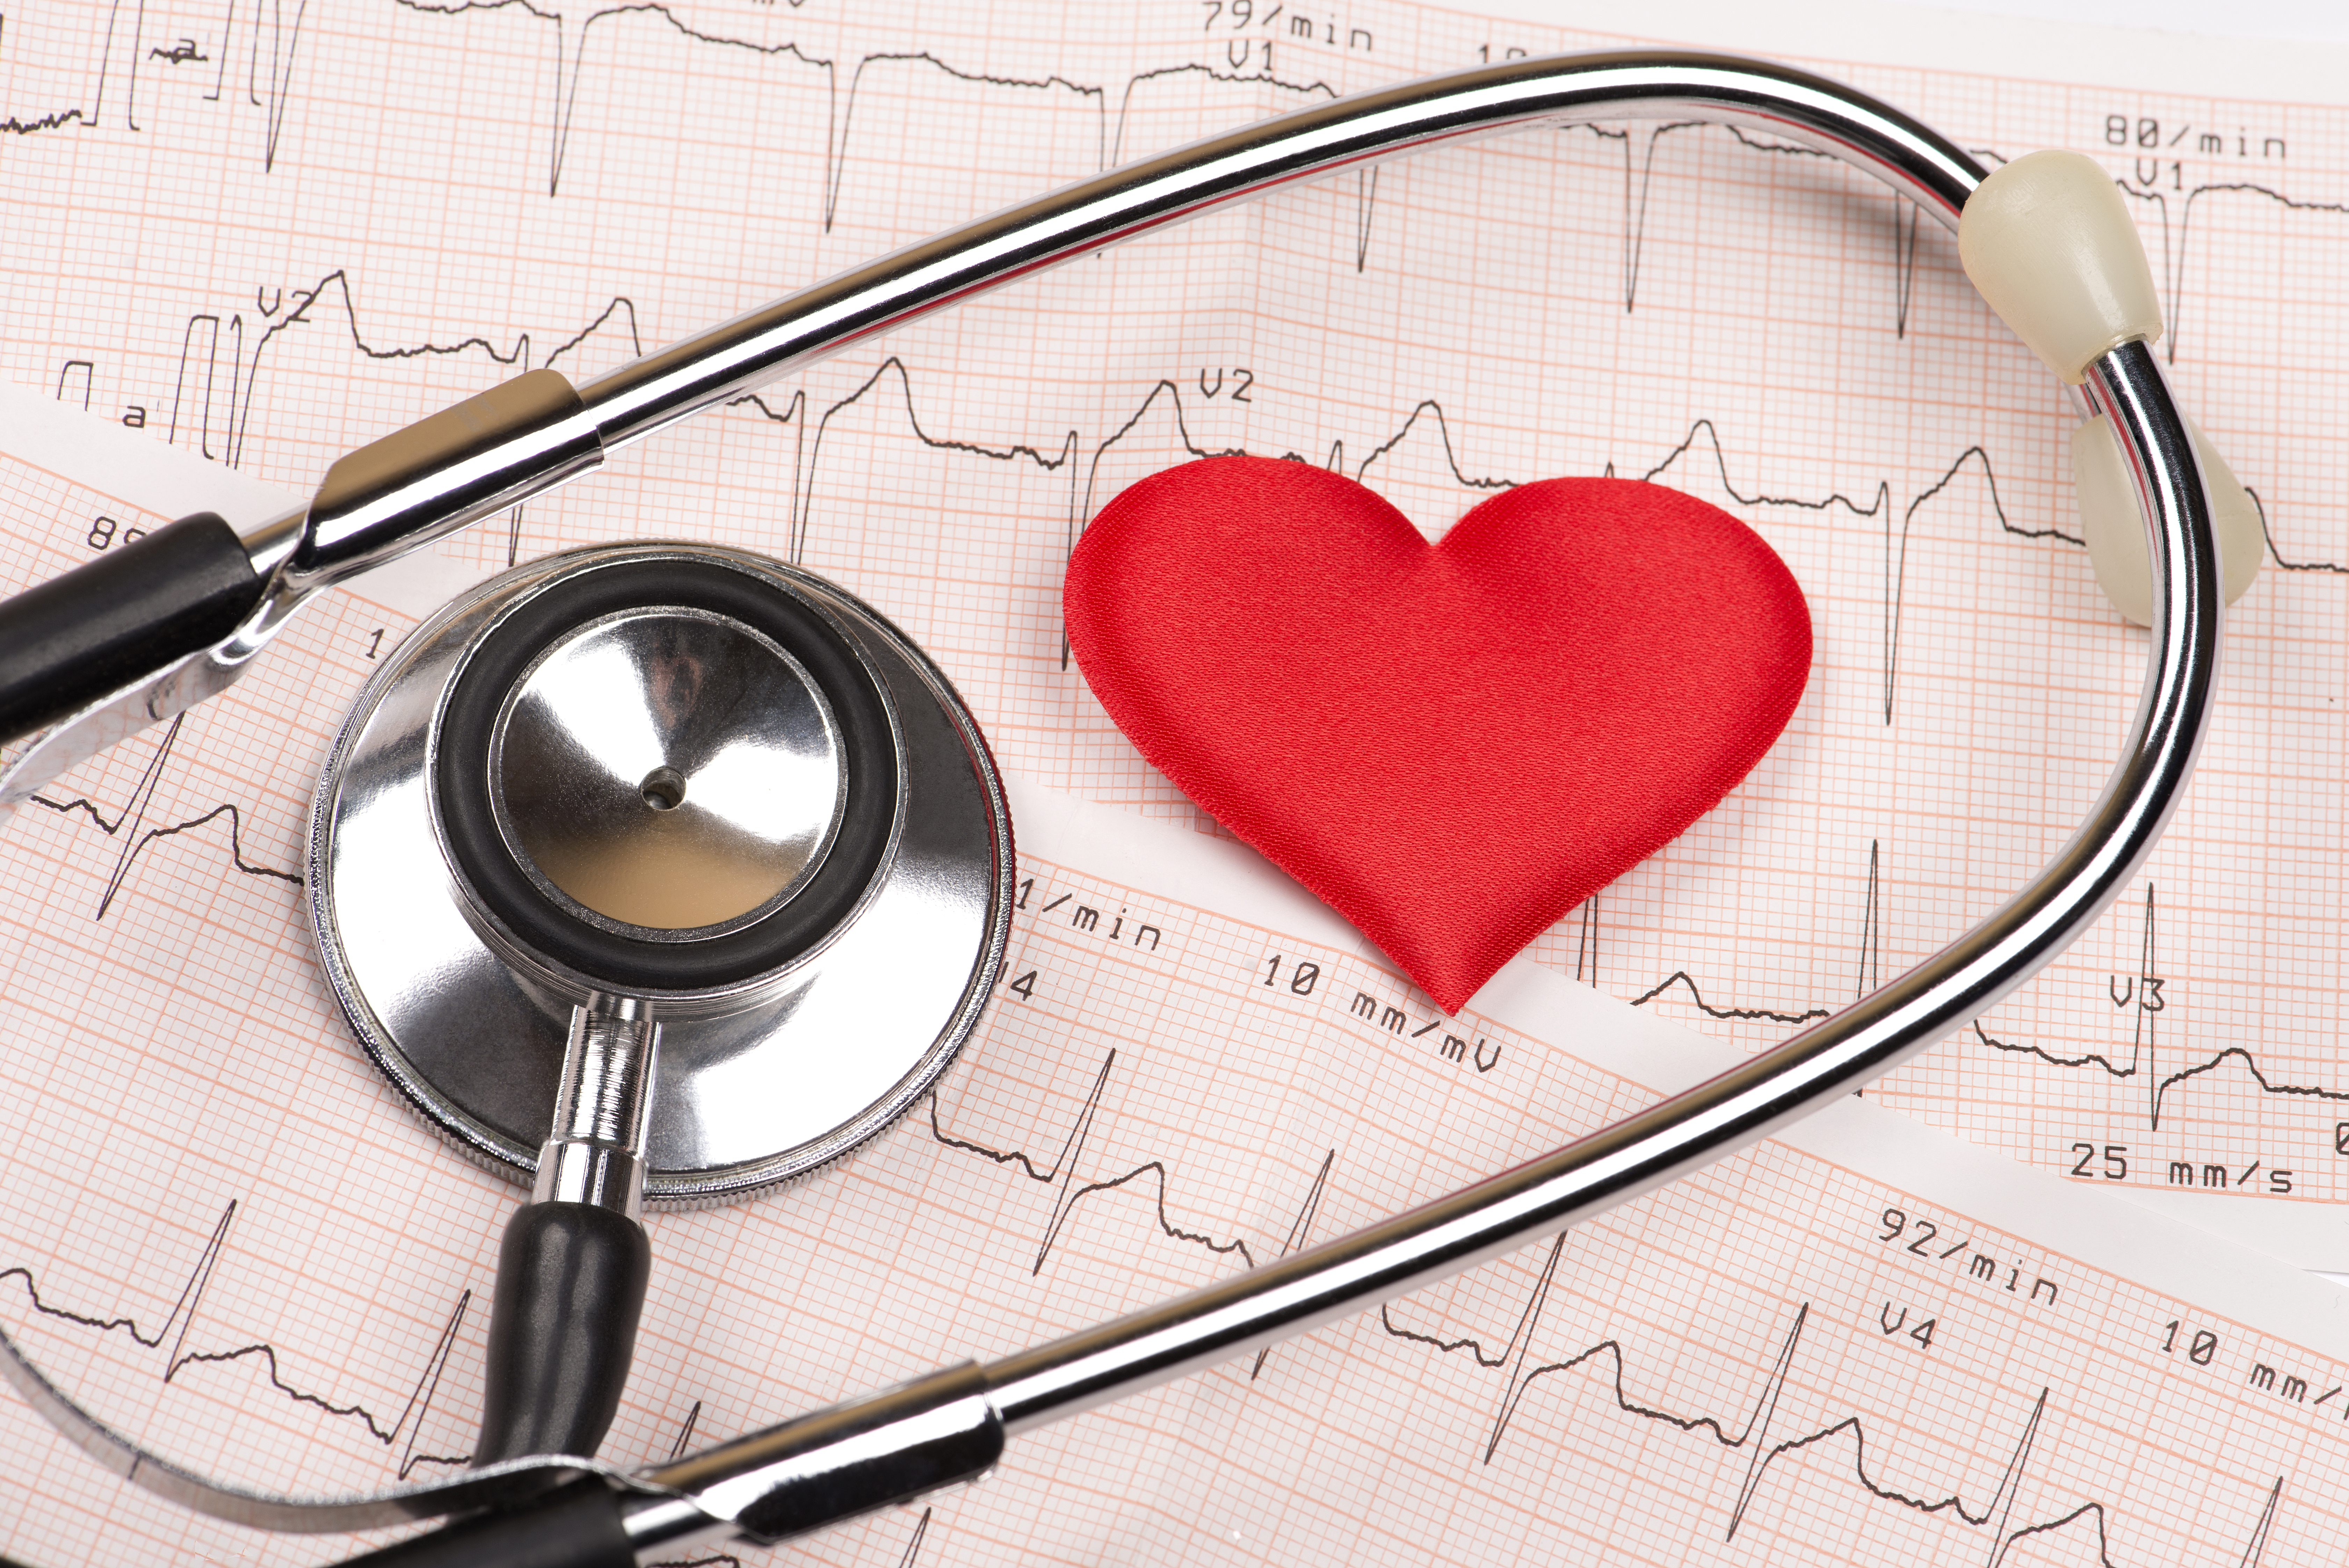 Пороки сердца с увеличением кровотока через легкие и цианозом. Цианоз при транспозиции магистральных сосудов